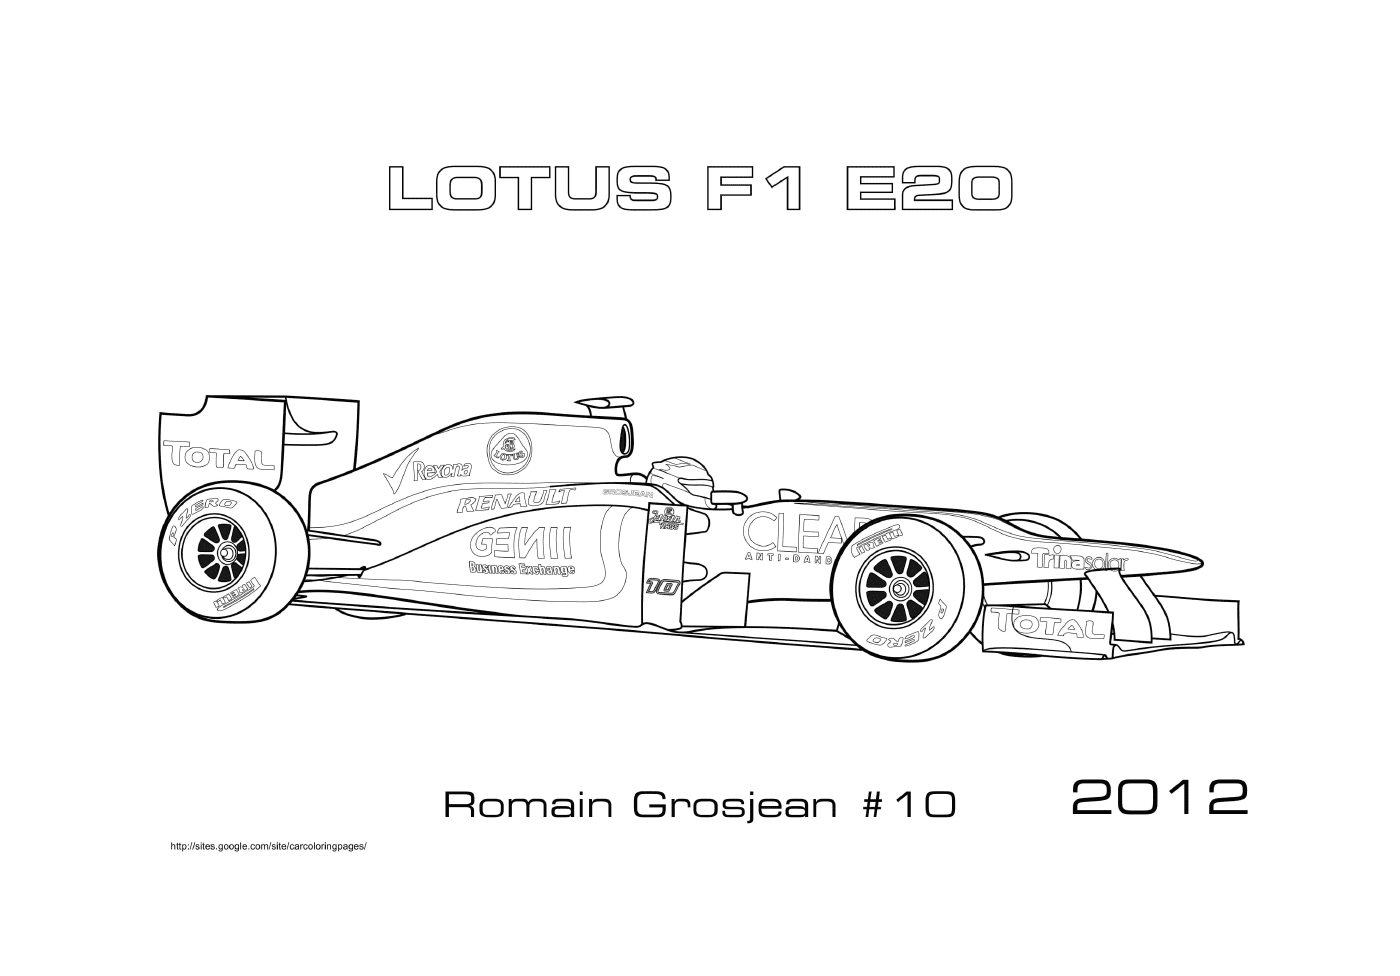   Lotus E20 Romain Grosjean 